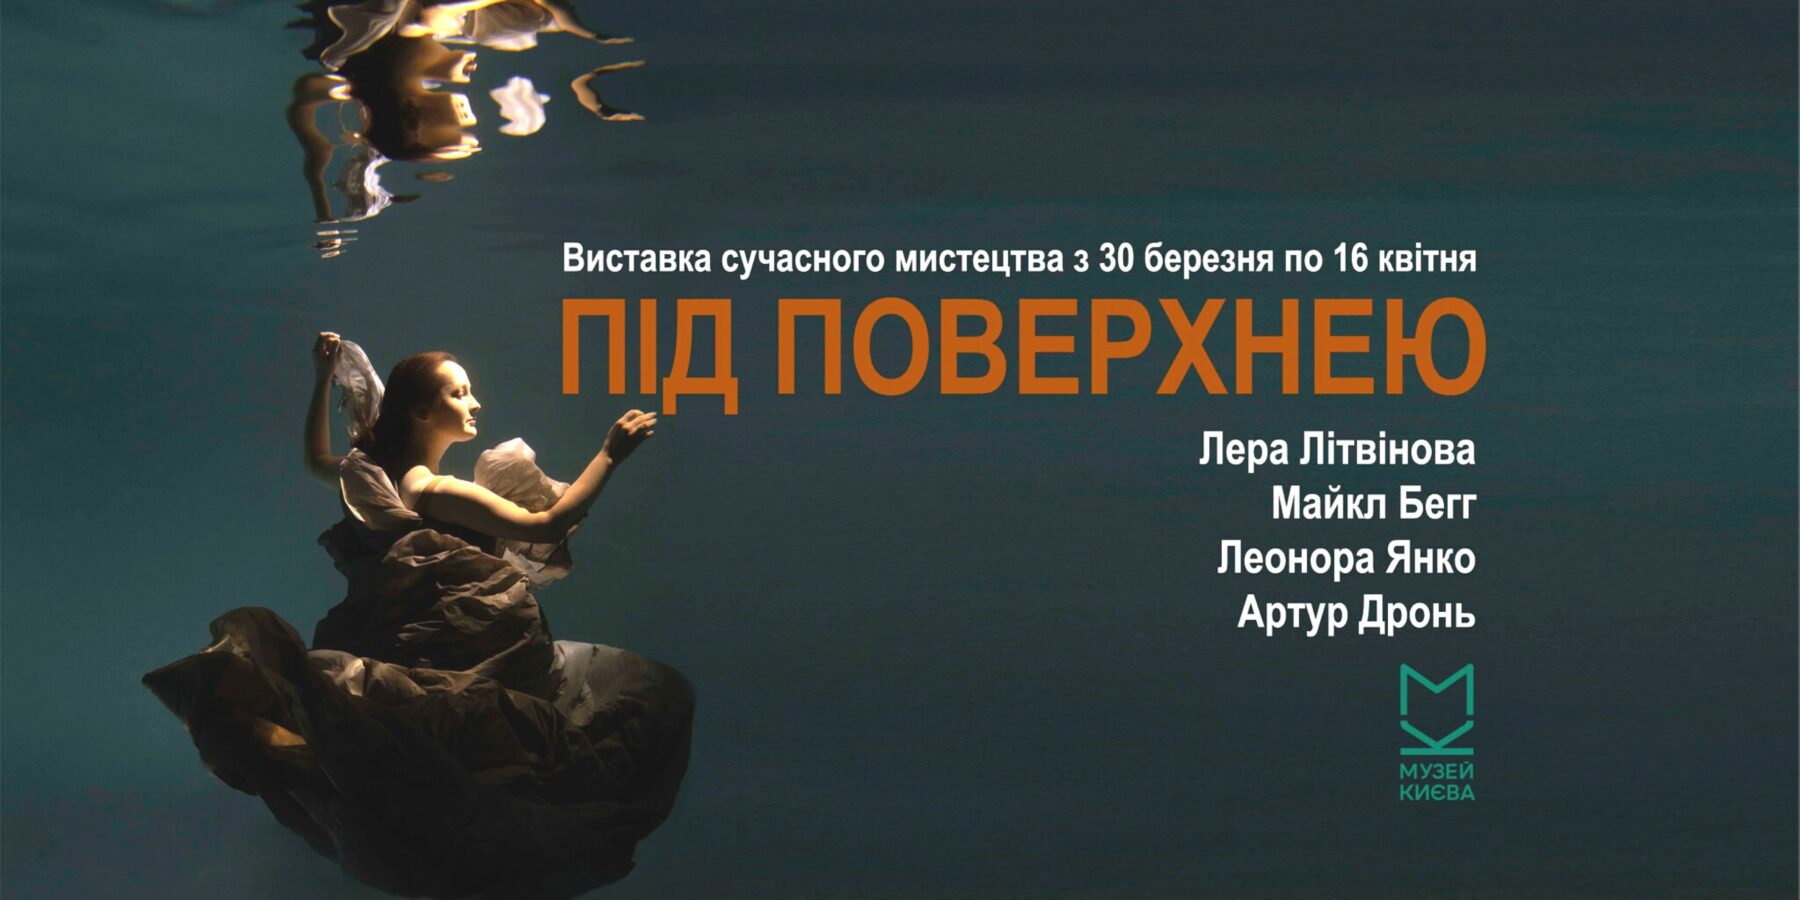 У Києві пройде презентація мистецького проєкту "Під поверхнею"